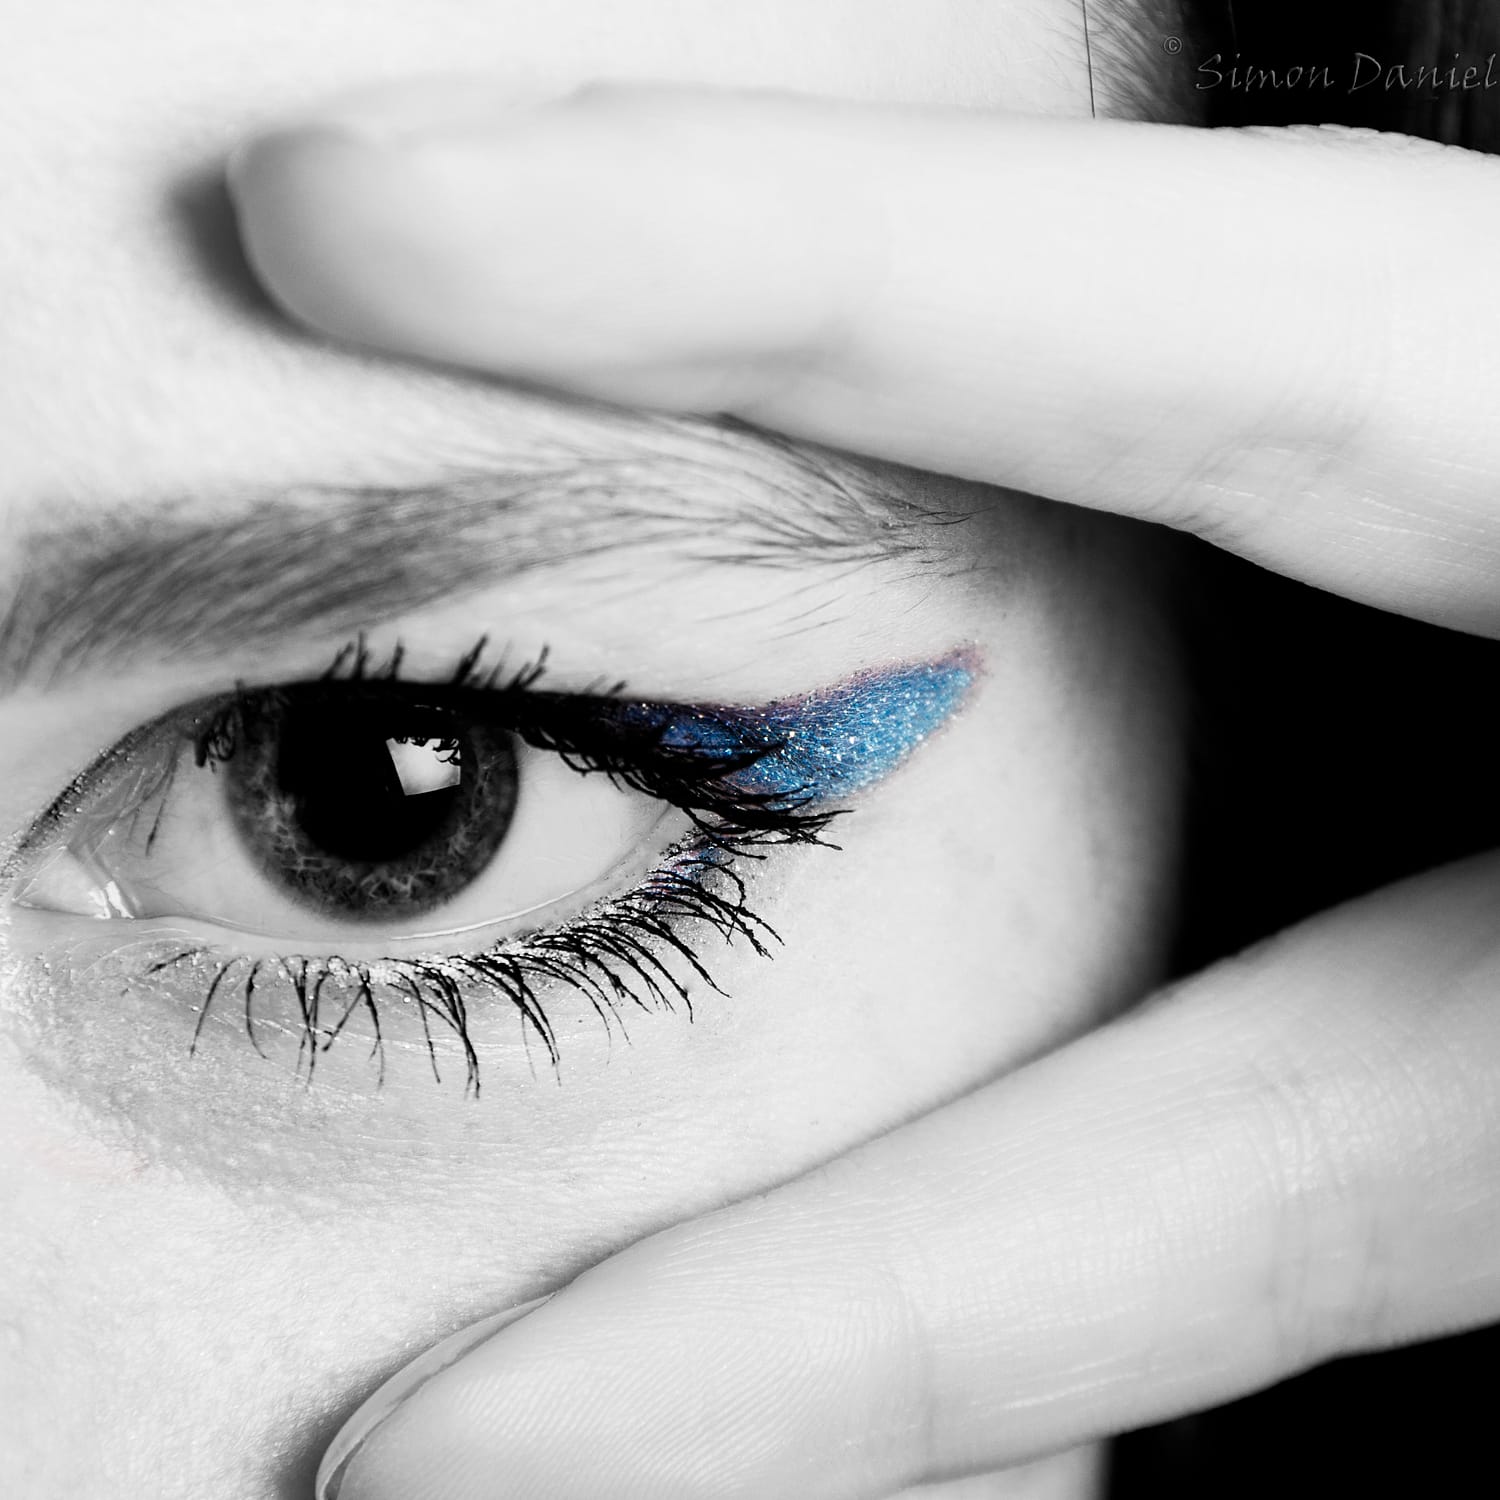 Close-up of eye showing Latisse eyelashes and blue eyeshadow